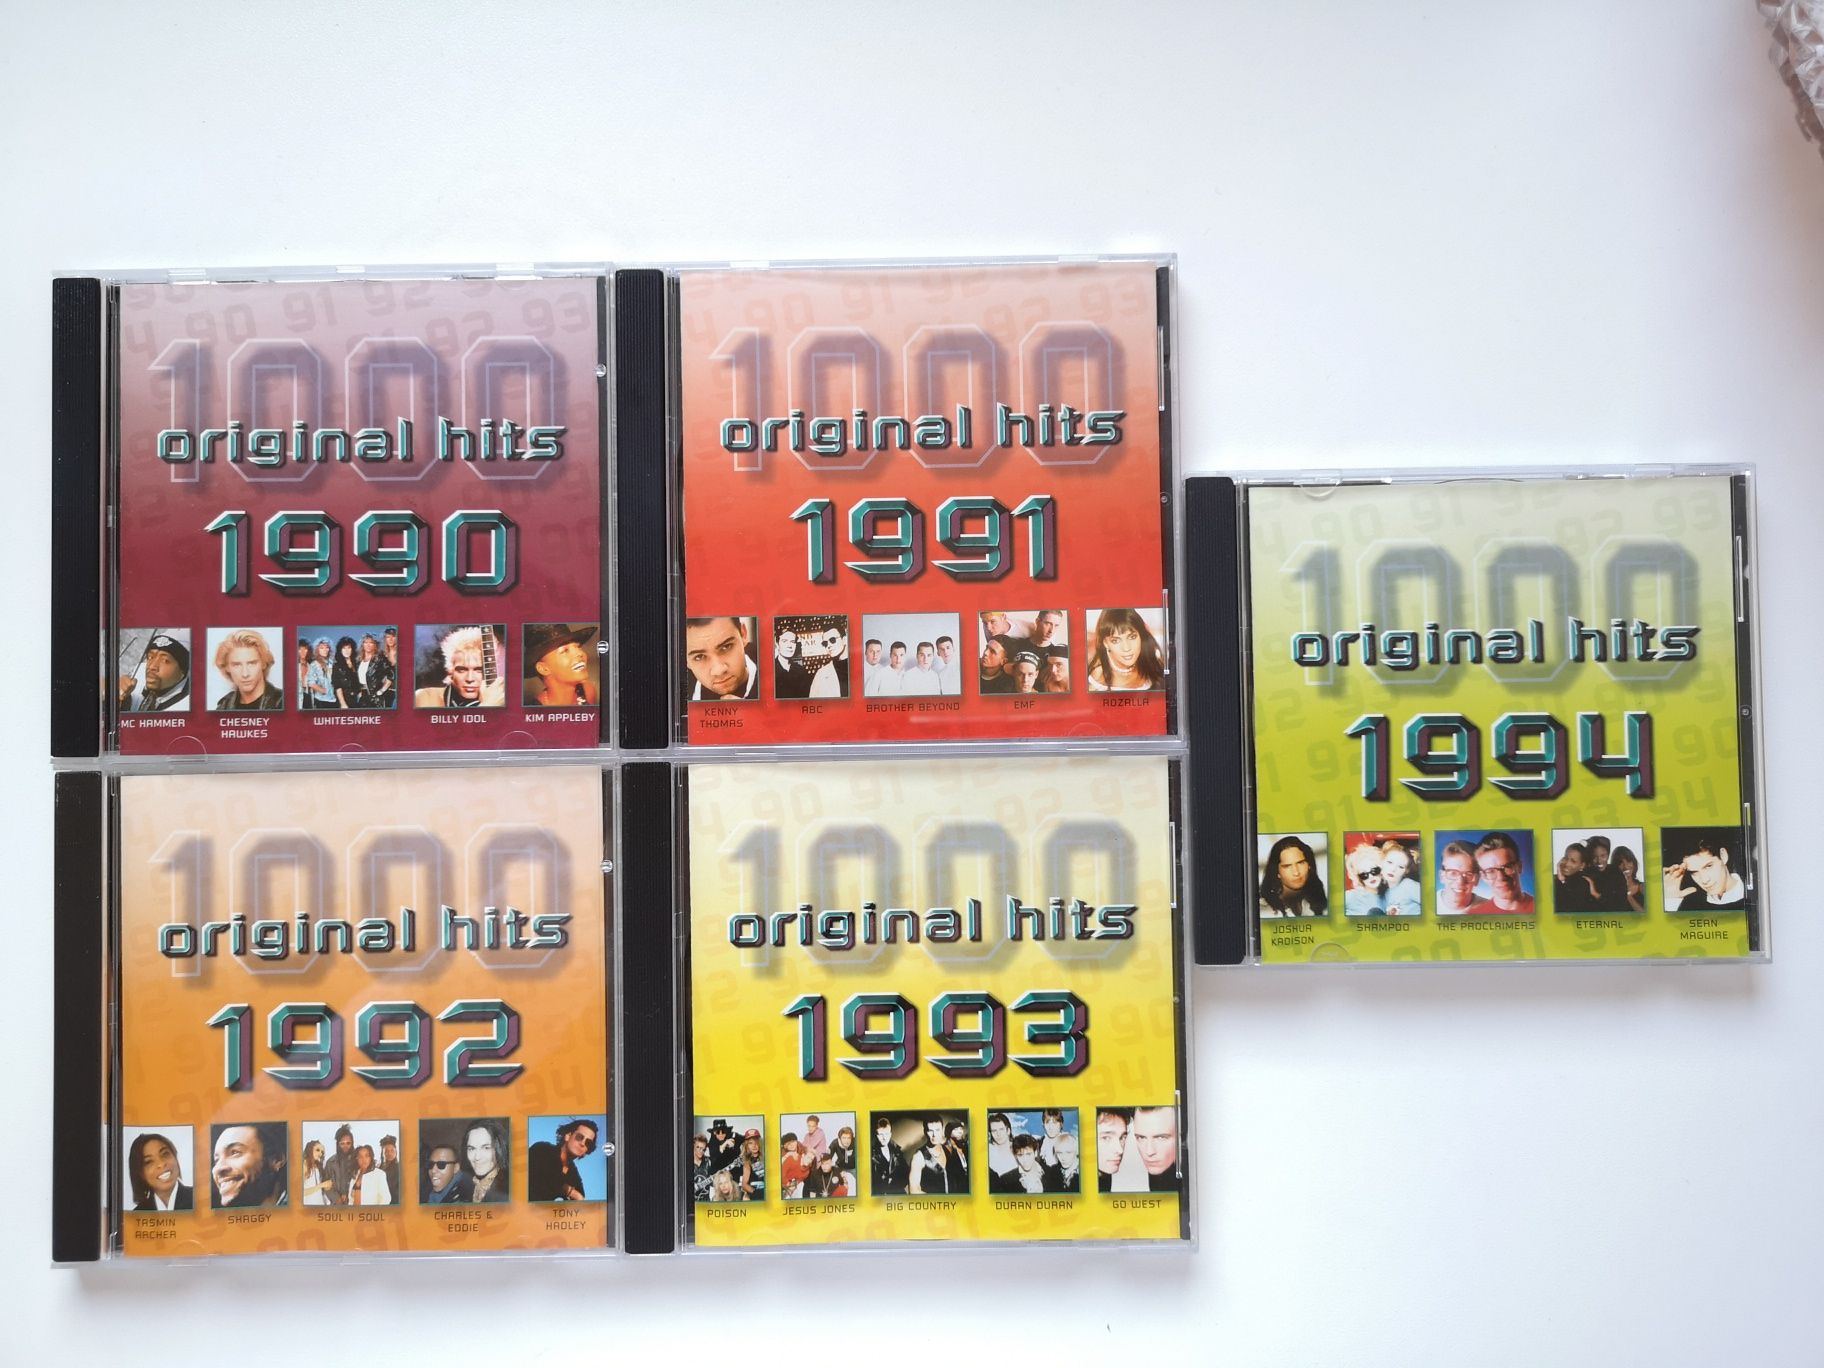 1000 Original hits 1990-1994